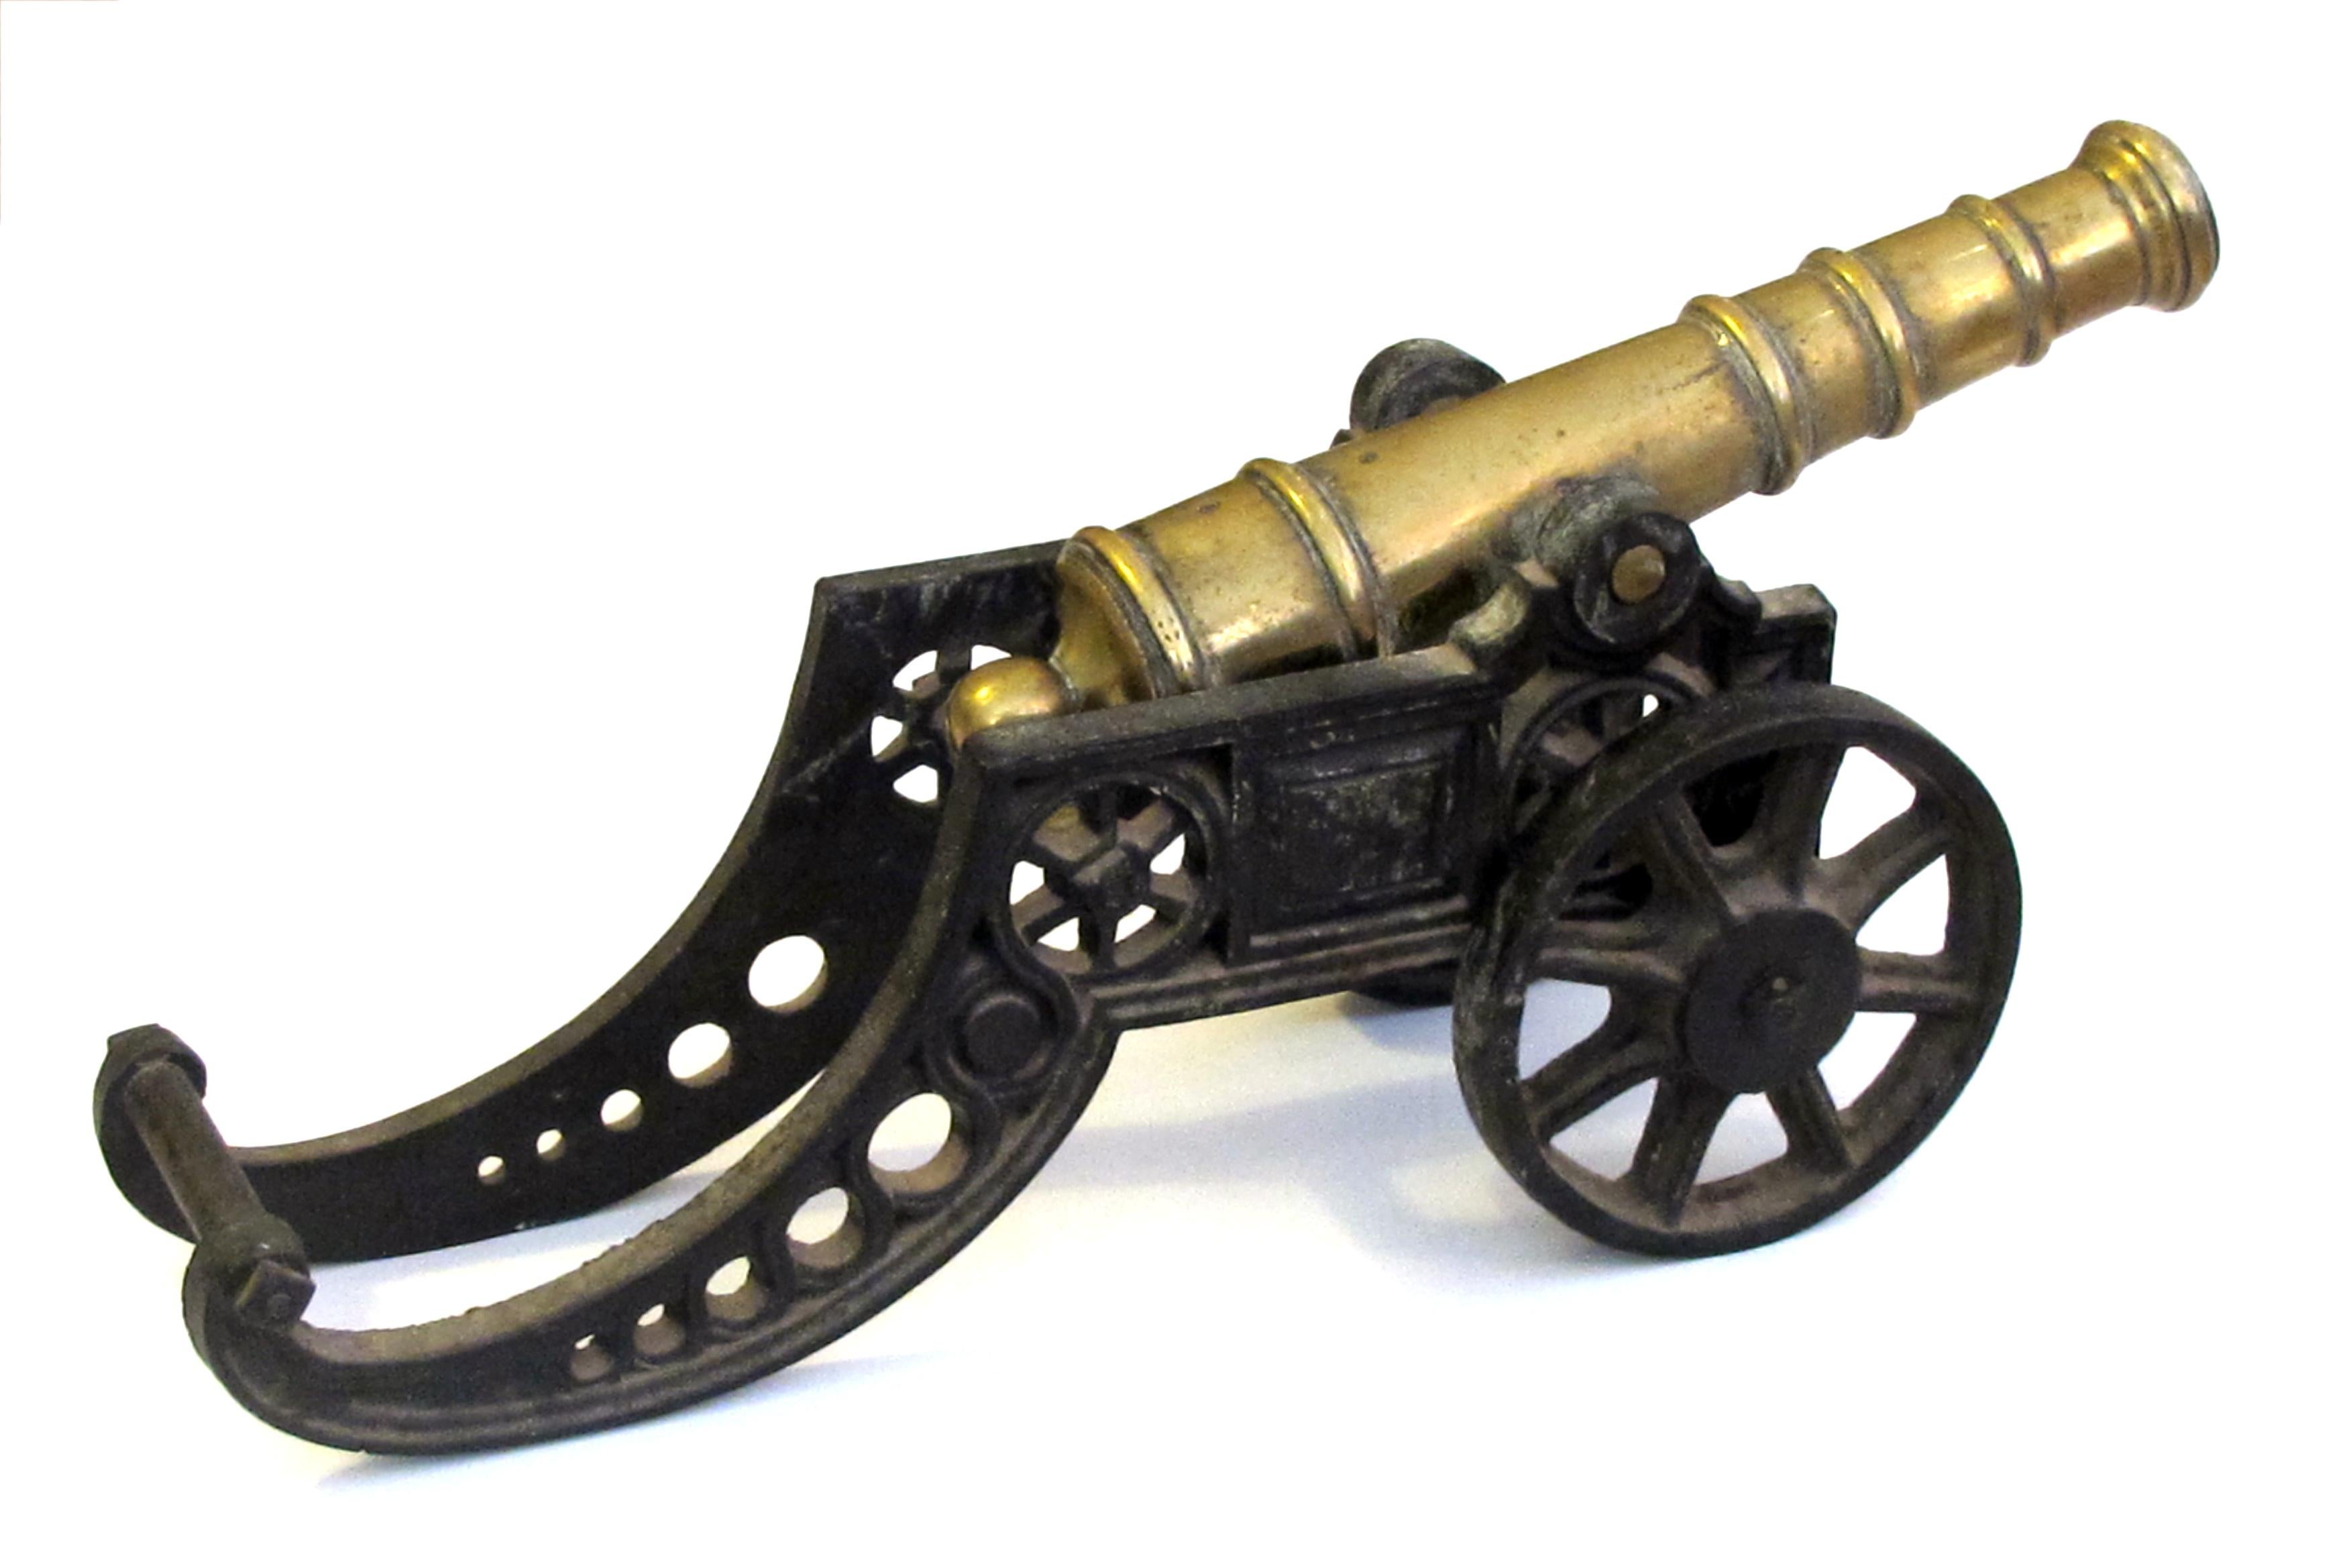 Canon Vintage Miniature Cast Iron & Brass Desk Cannon 